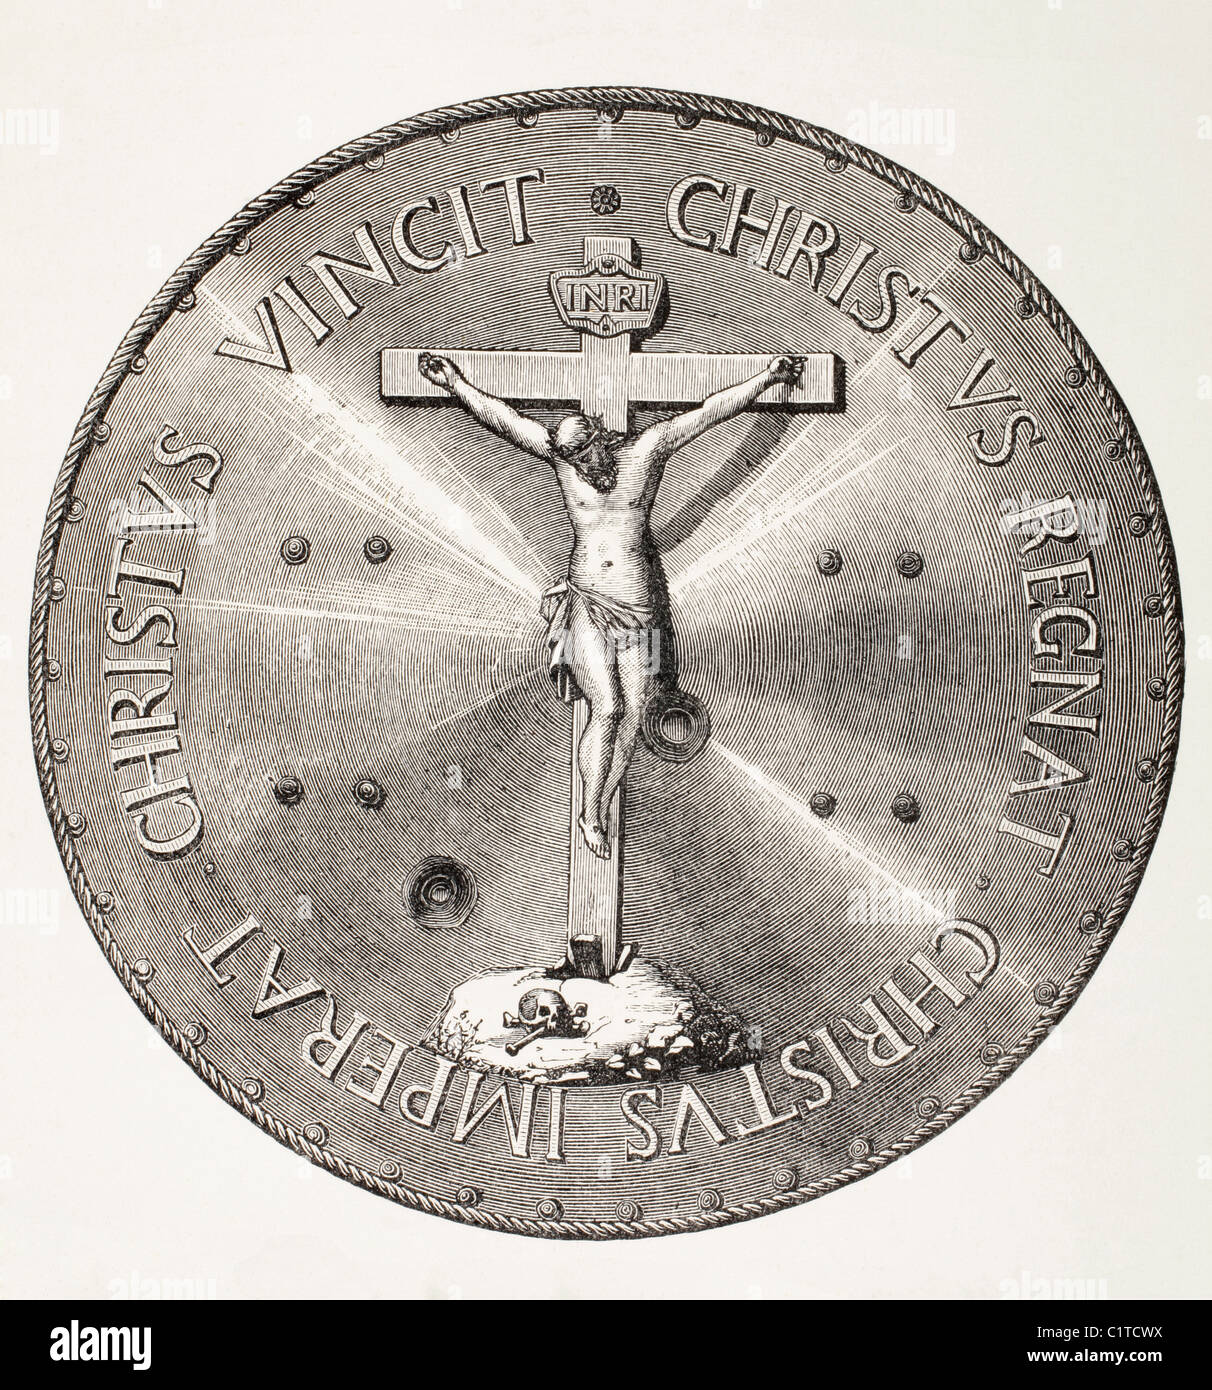 Escudo De Hierro presentó a don Juan de Austria por el Papa Pío V por sus servicios a la Cristiandad después de la victoria de Lepanto, 1571. Foto de stock